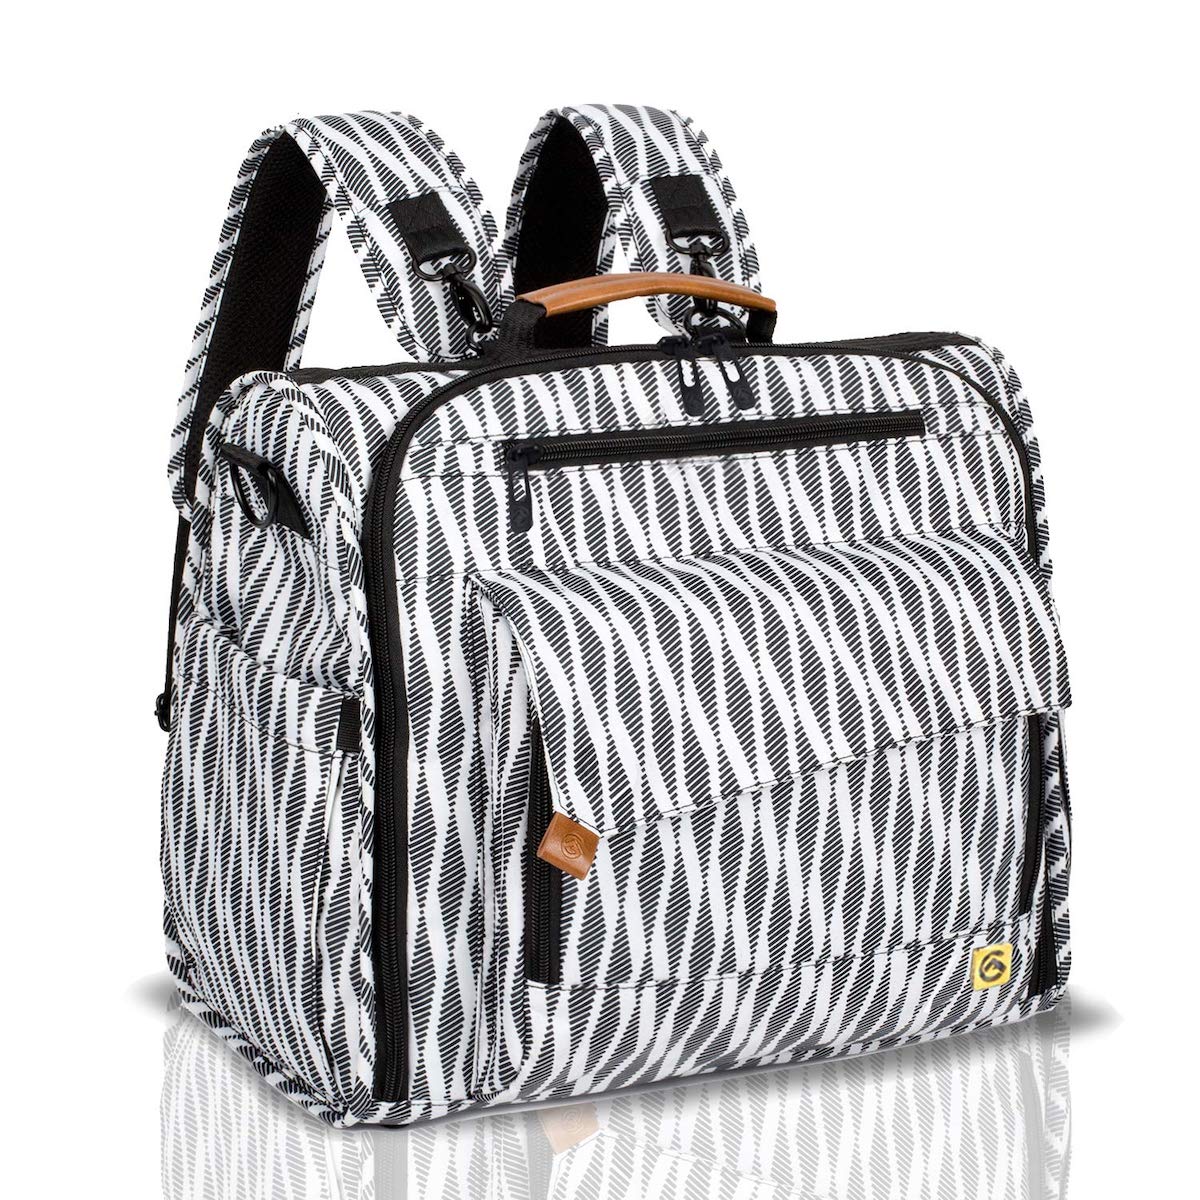 SuperK Black Sling Bag Stylish Trendy Zebra Print Sling Bag With Heavy  Metallic Chain Black & White - Price in India | Flipkart.com